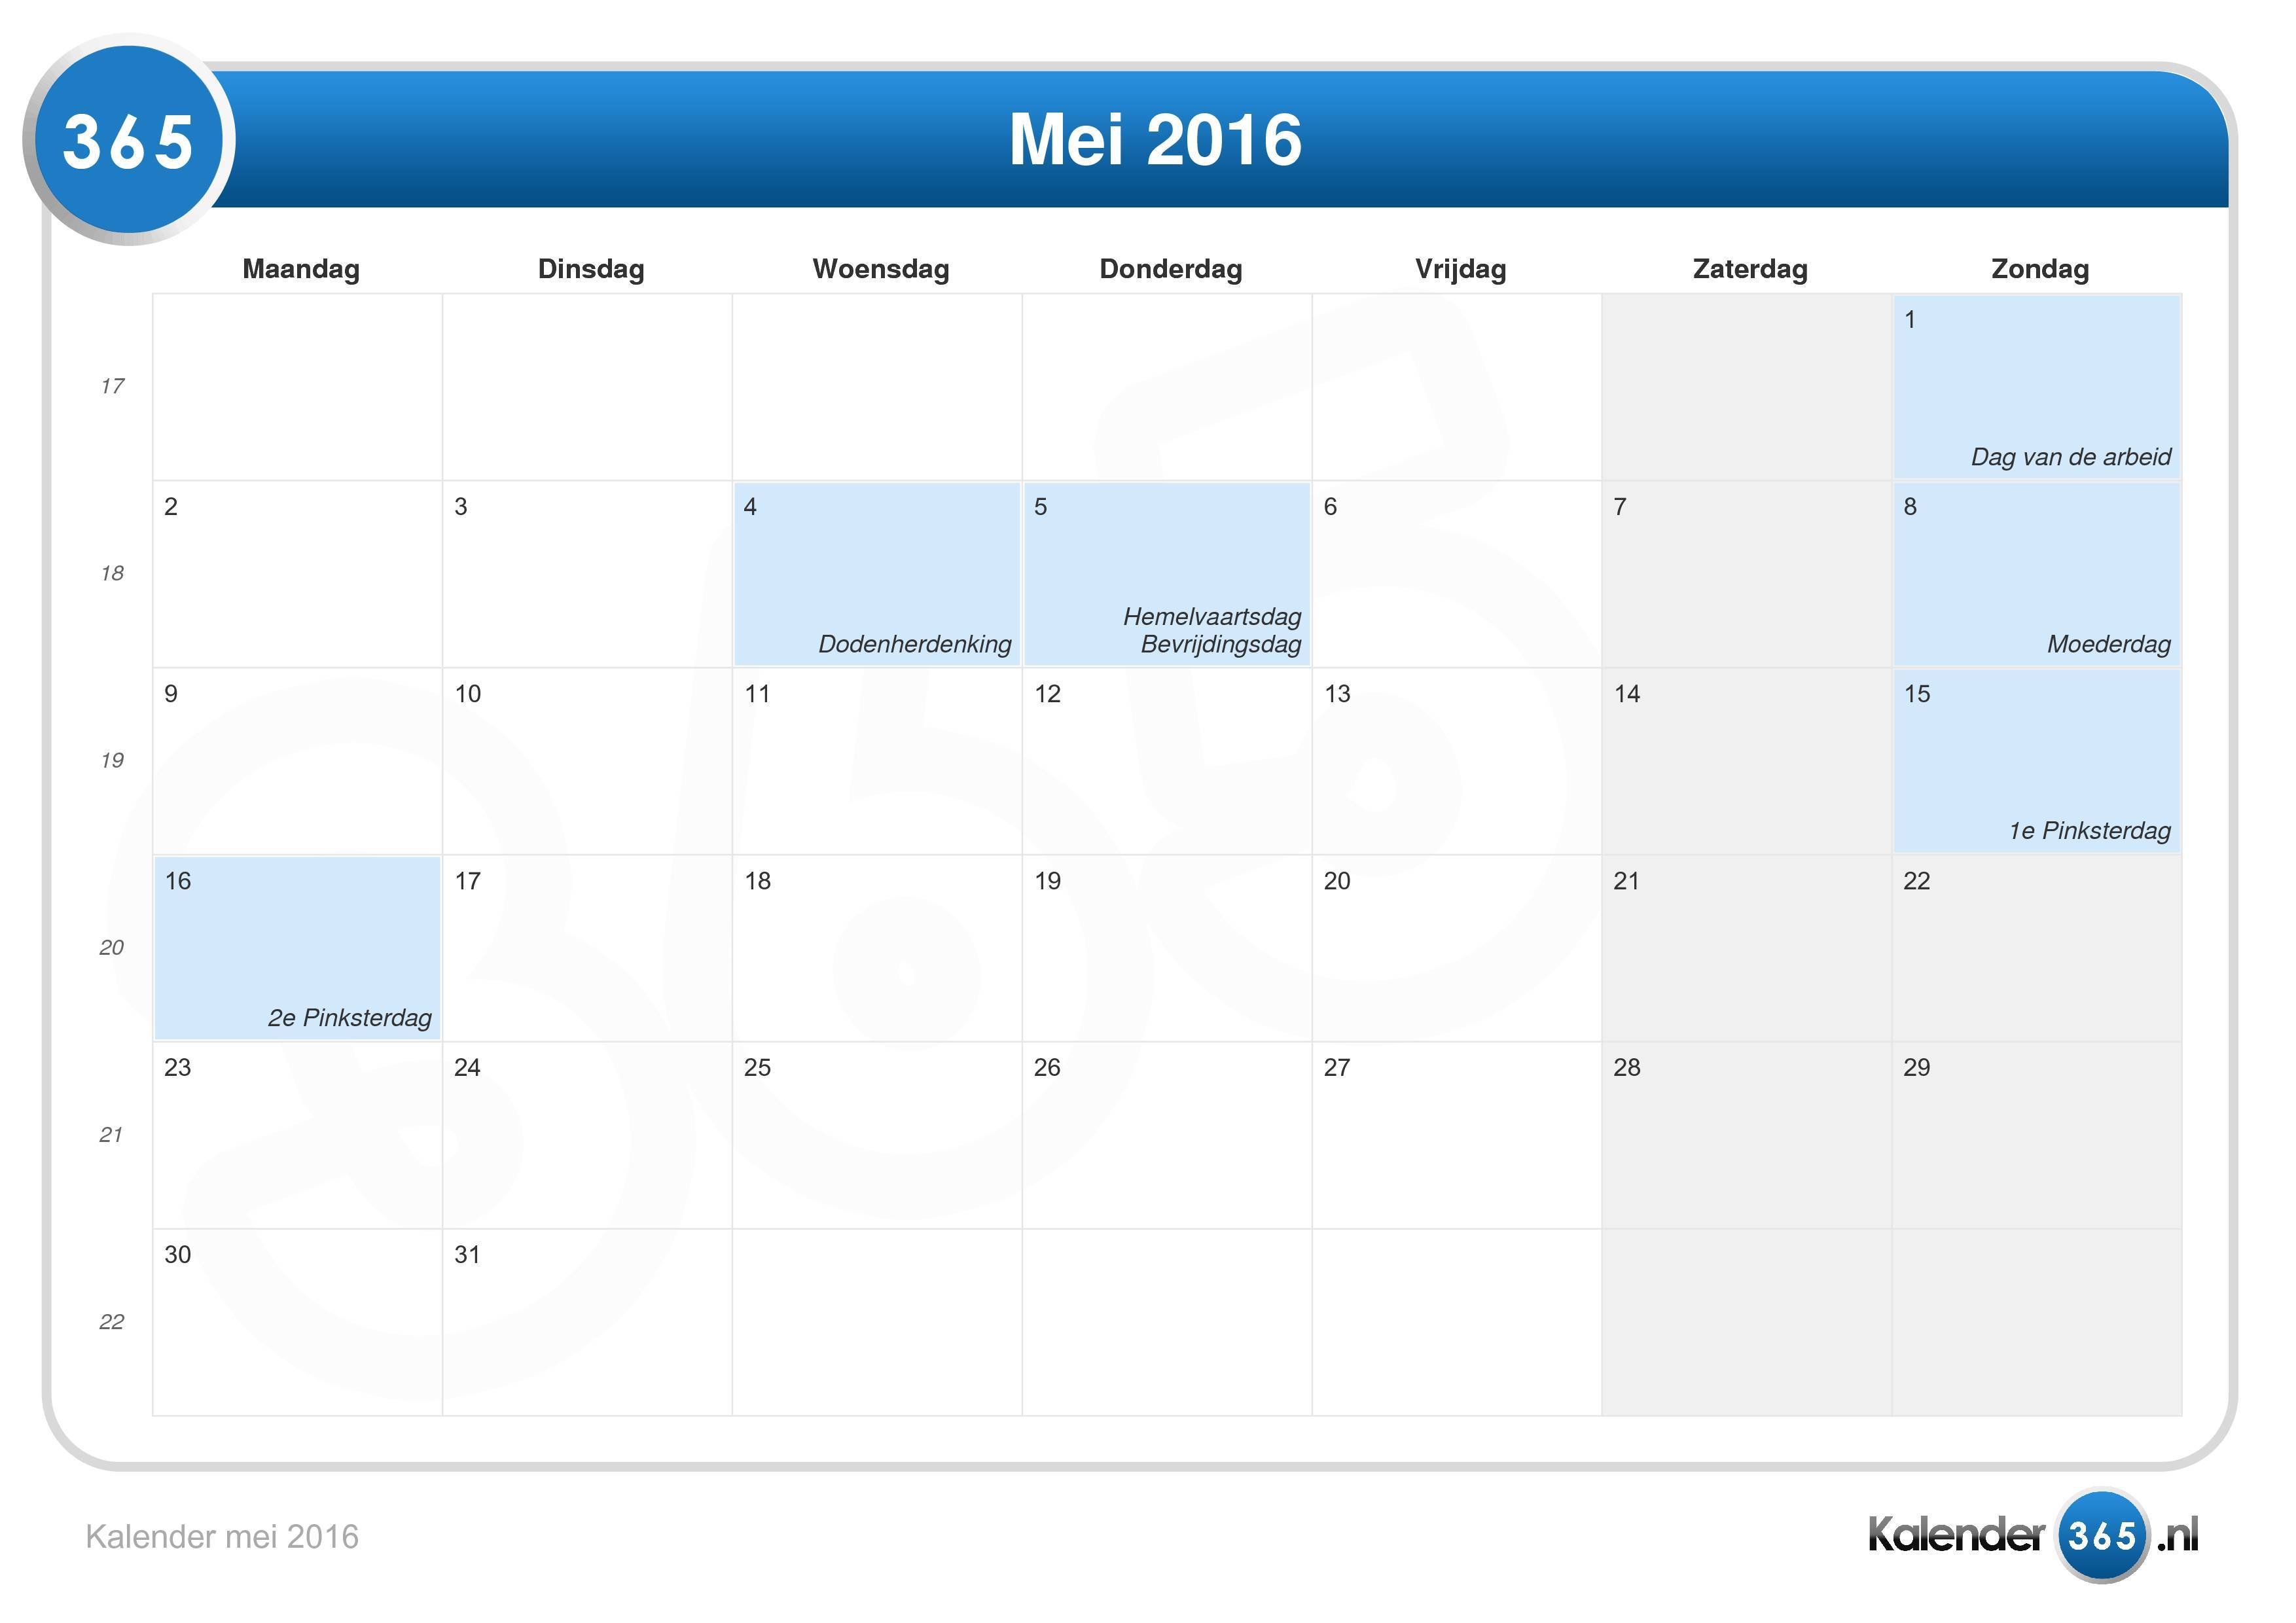 achterzijde Trouw in verlegenheid gebracht Kalender mei 2016